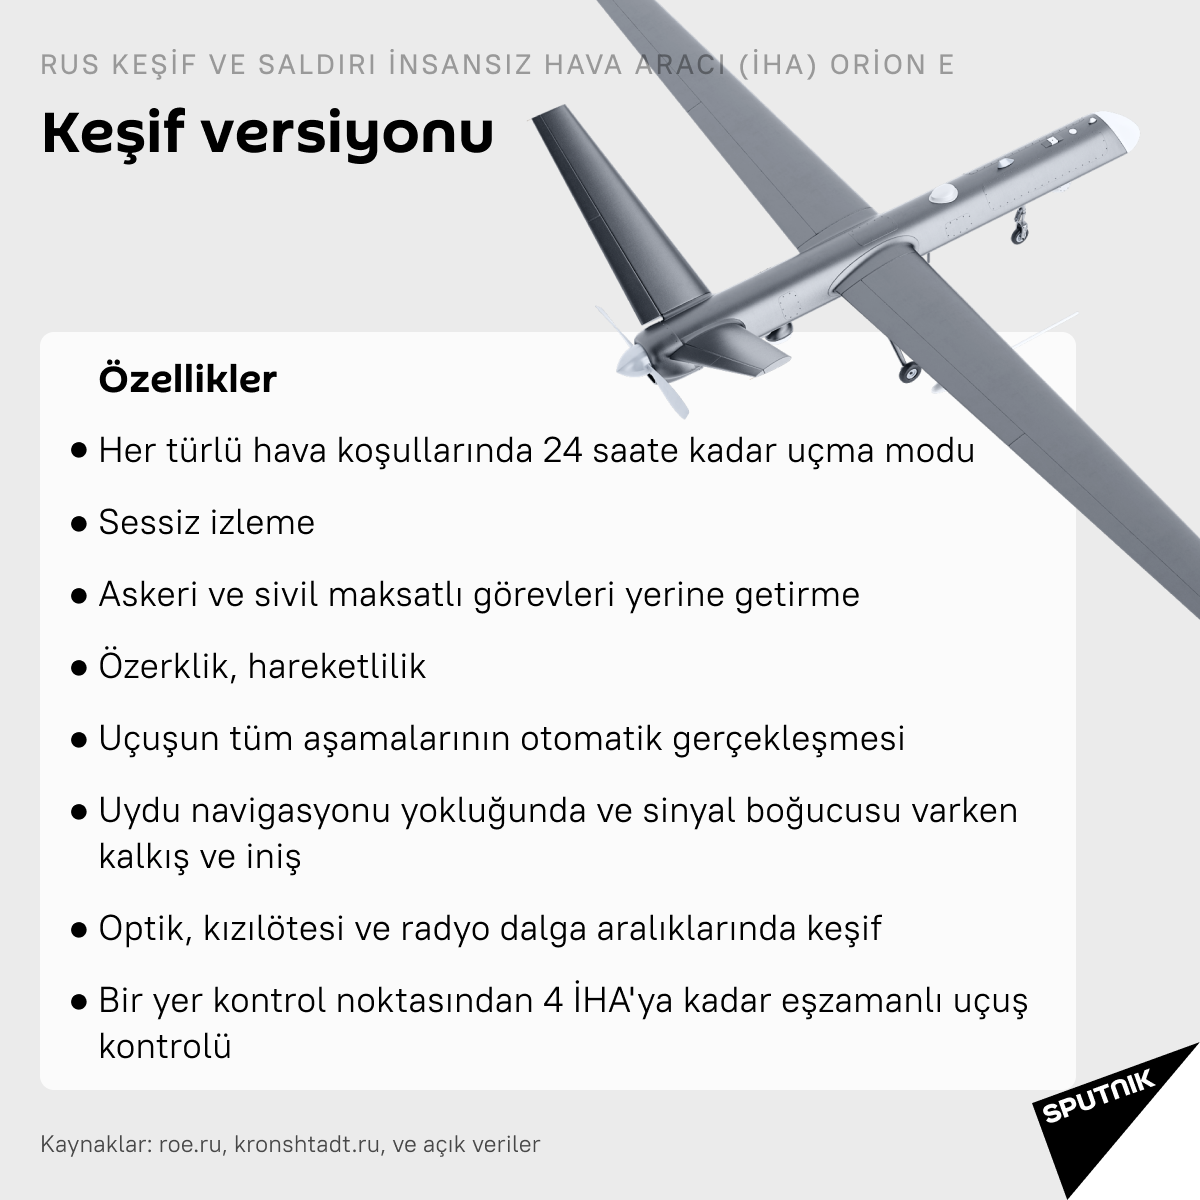 Orion E insansız hava aracı - Sputnik Türkiye